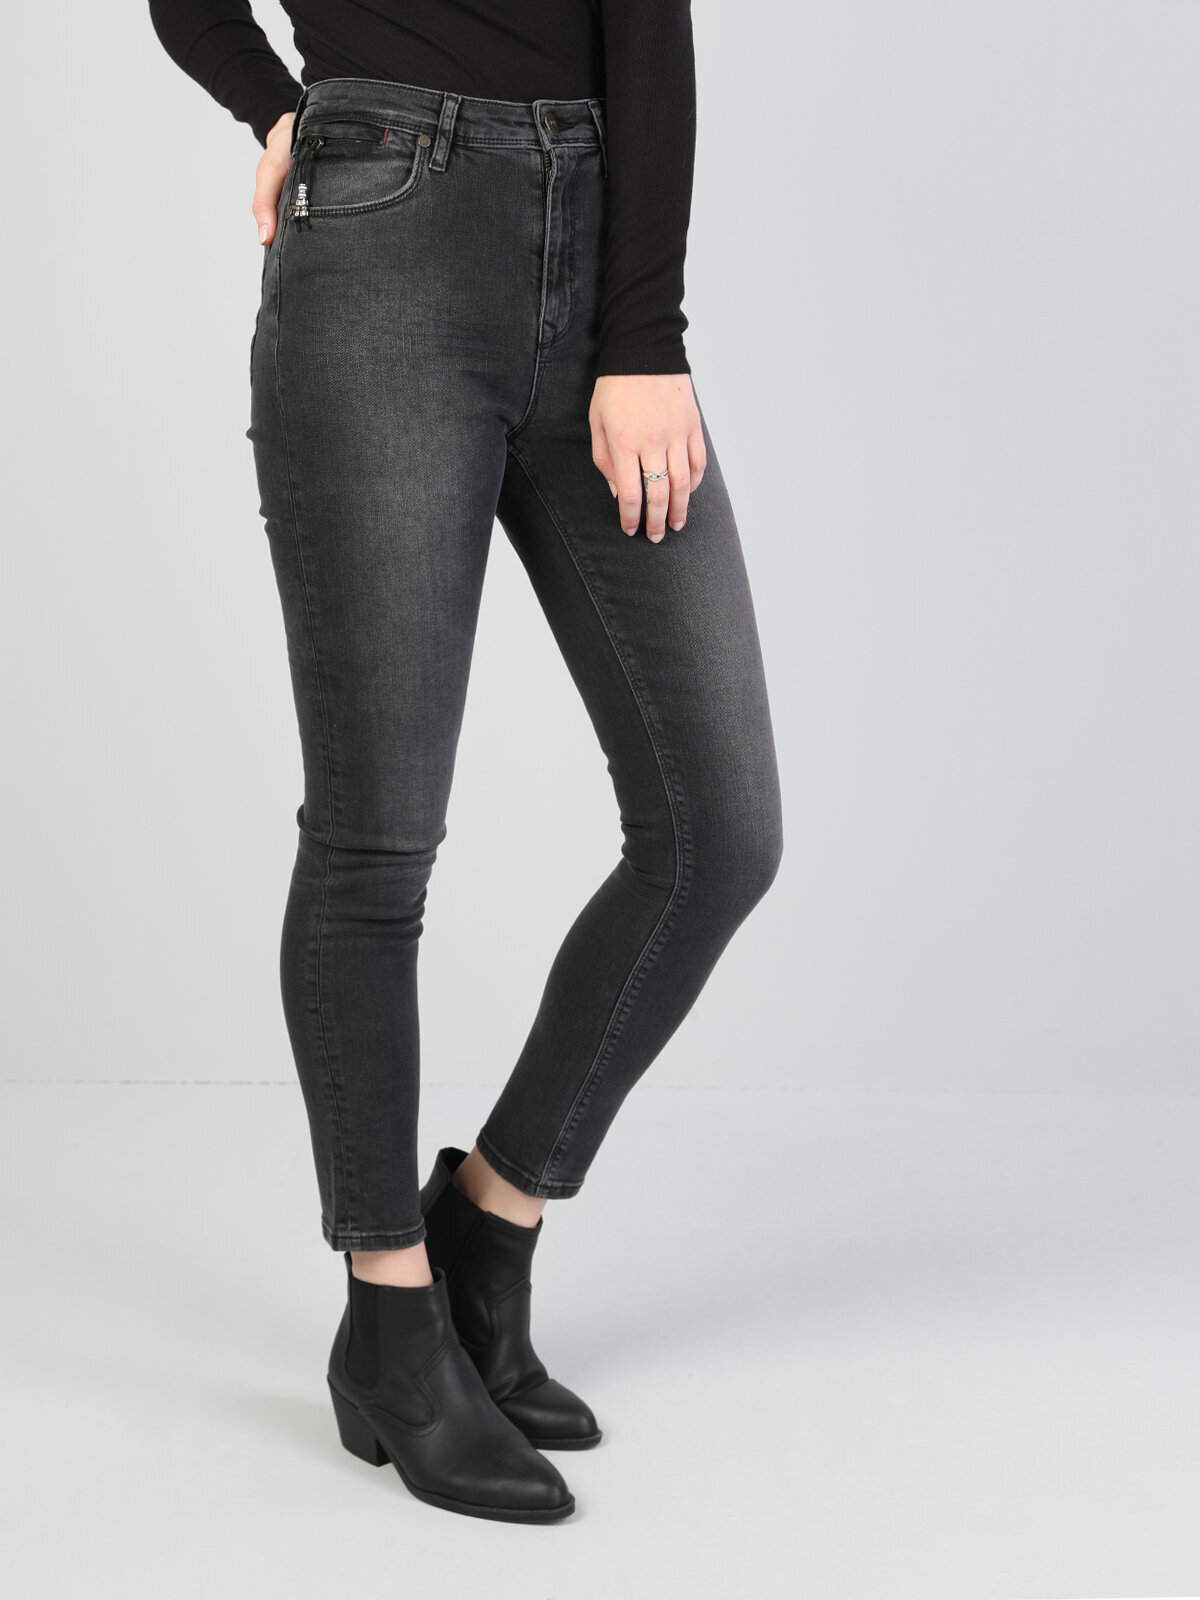 Colins 760 Dıana Yüksek Bel Dar Paça Super Slim Fit Koyu Gri Kadın Jean Pantolon. 1